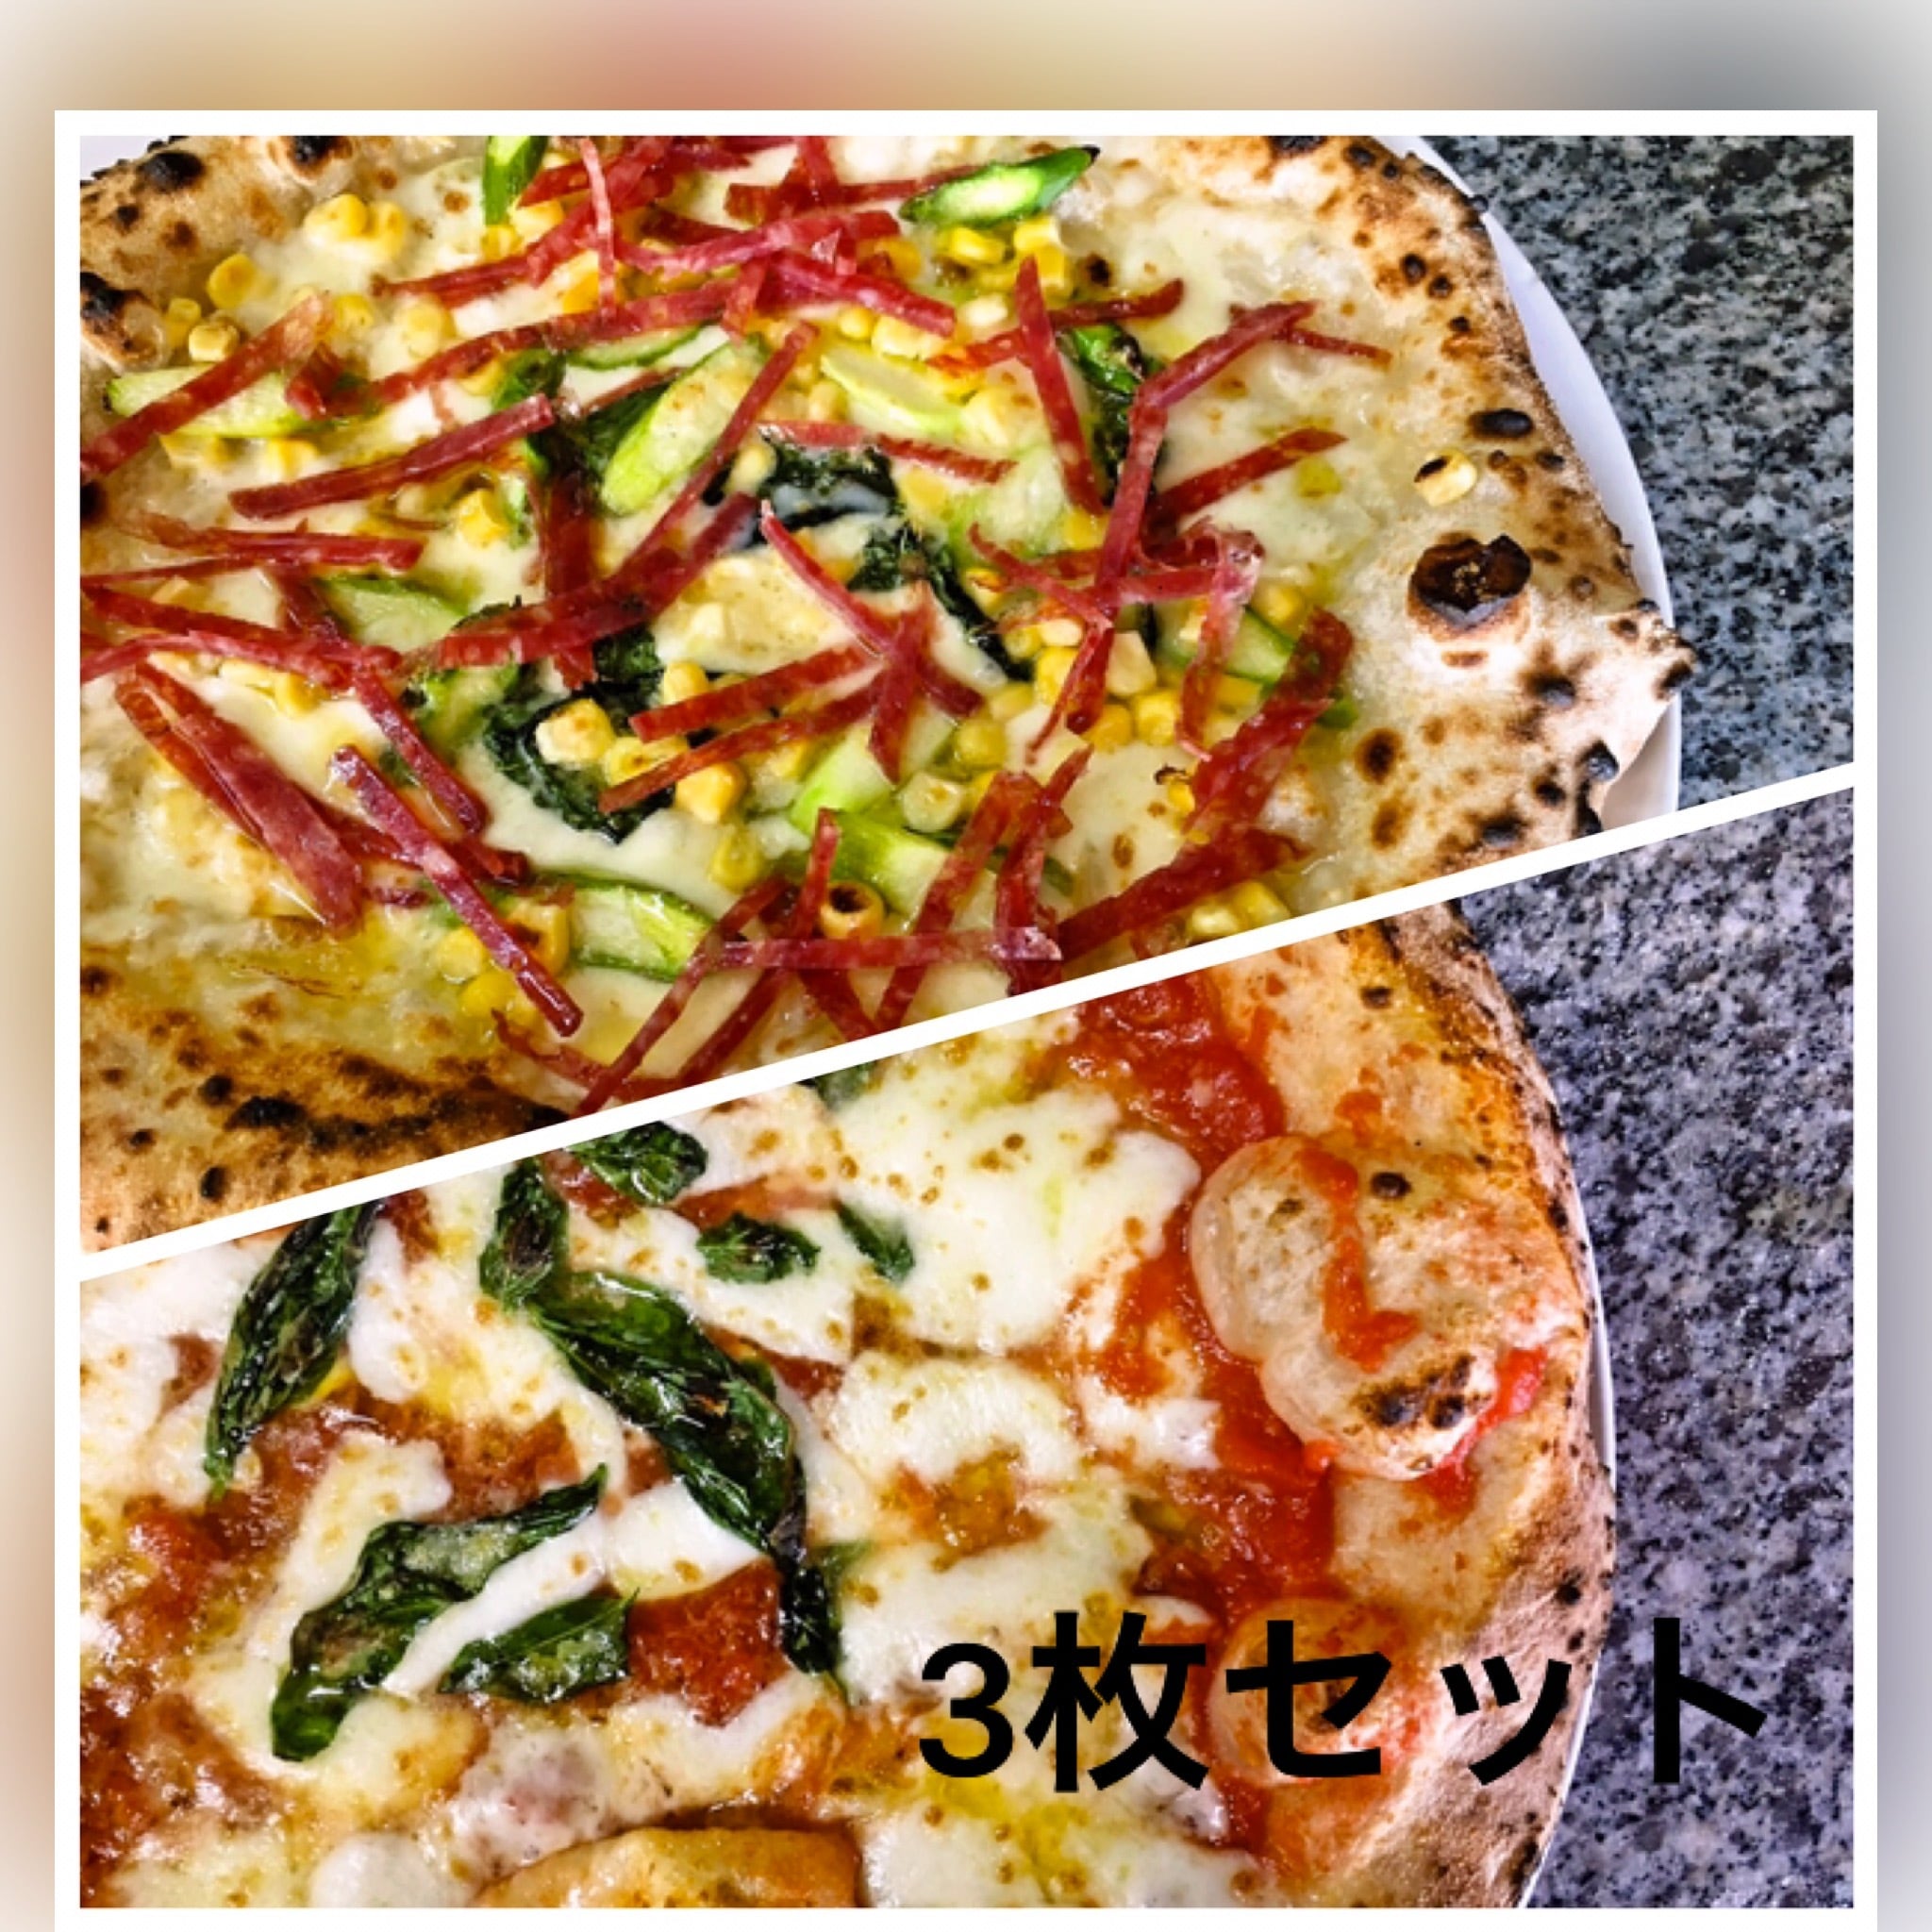 3枚セット　clair　マルゲリータ2枚とサラミとアスパラとコーンのピザ1枚　ナポリピザのクレール